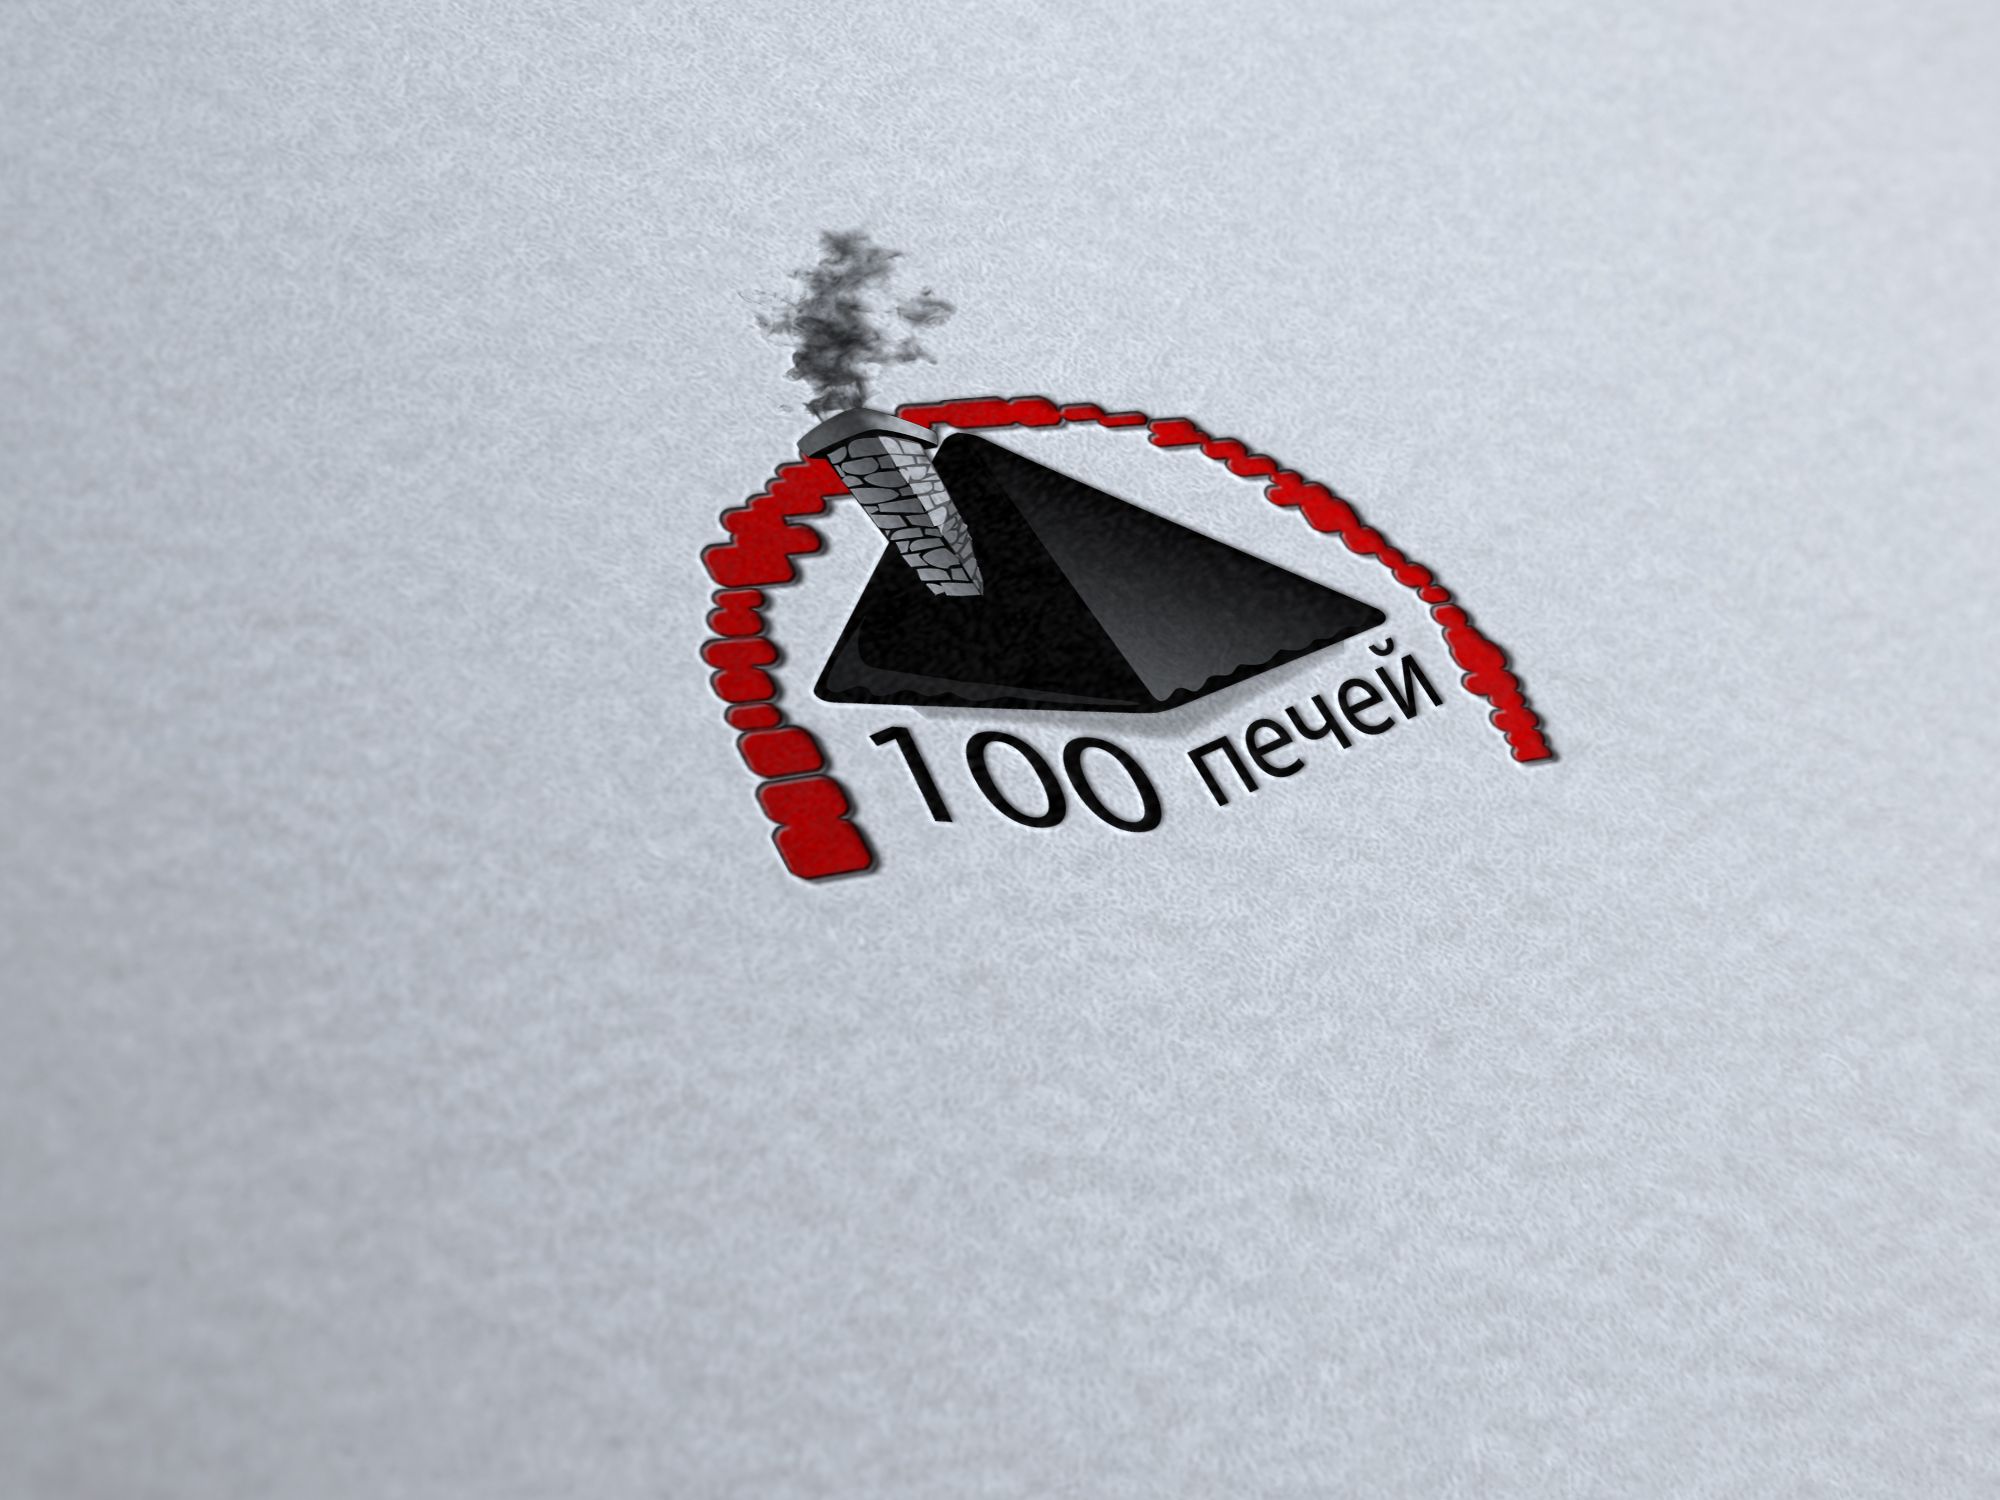 Логотип 100 печей - дизайнер sdalex777